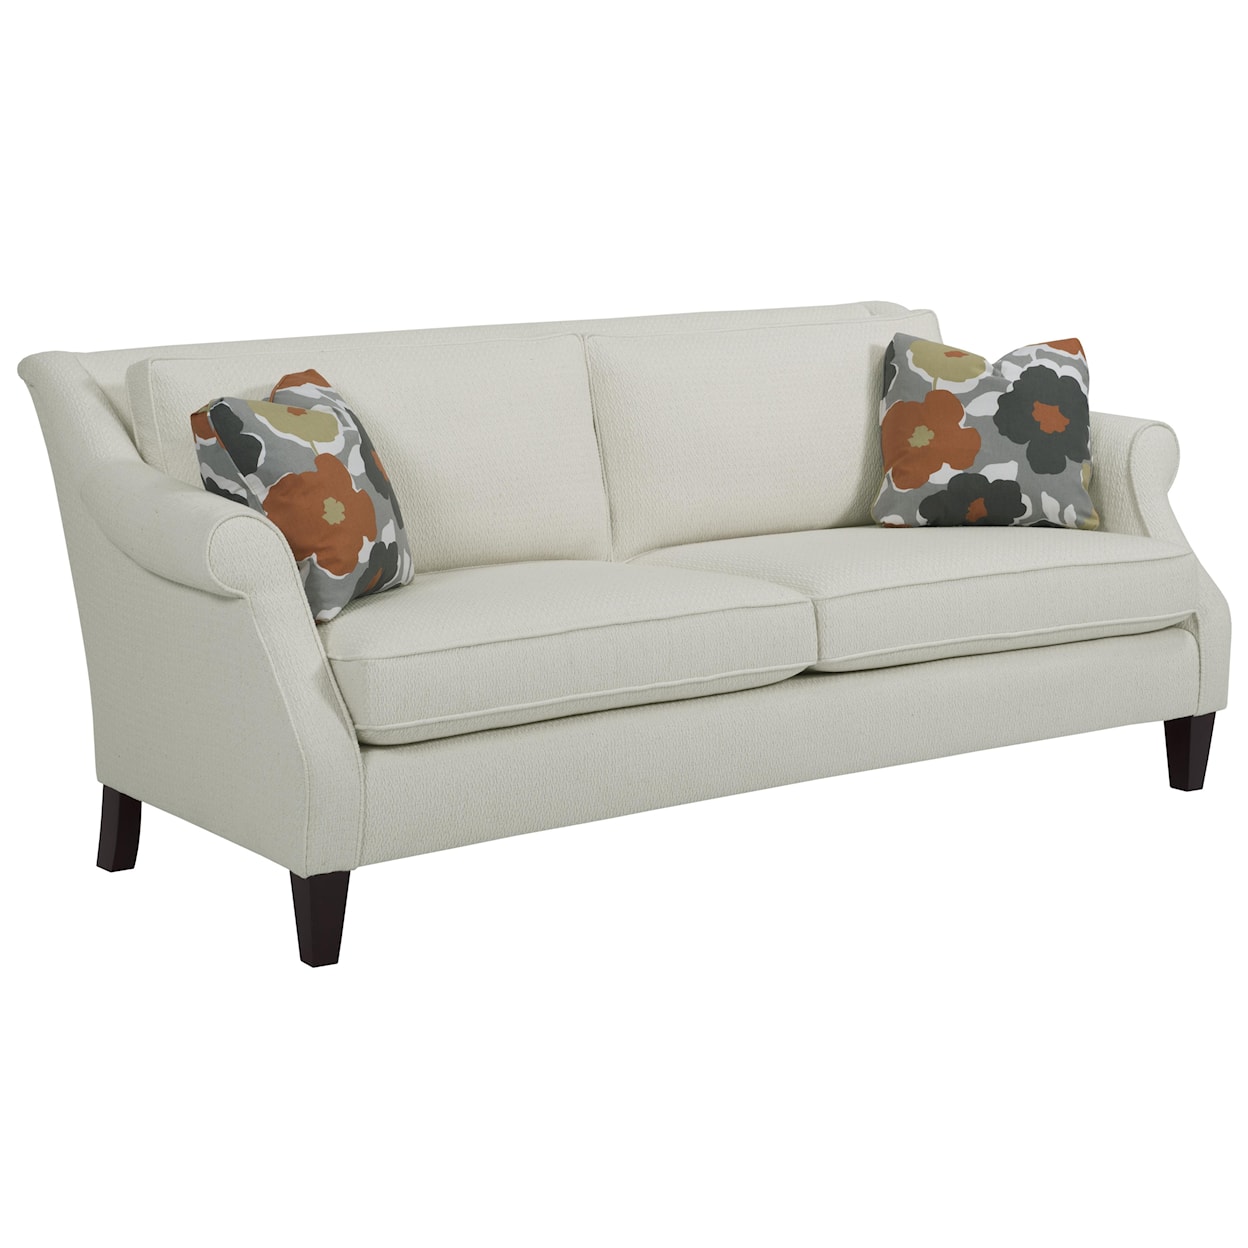 Kincaid Furniture Dilworth Sofa